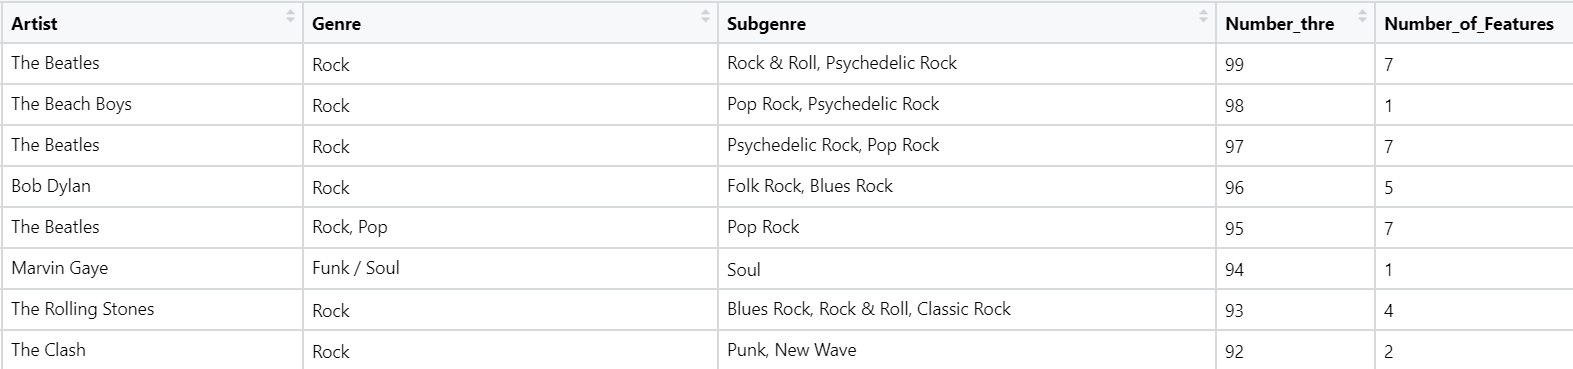 'Rock'ing Analysis in R